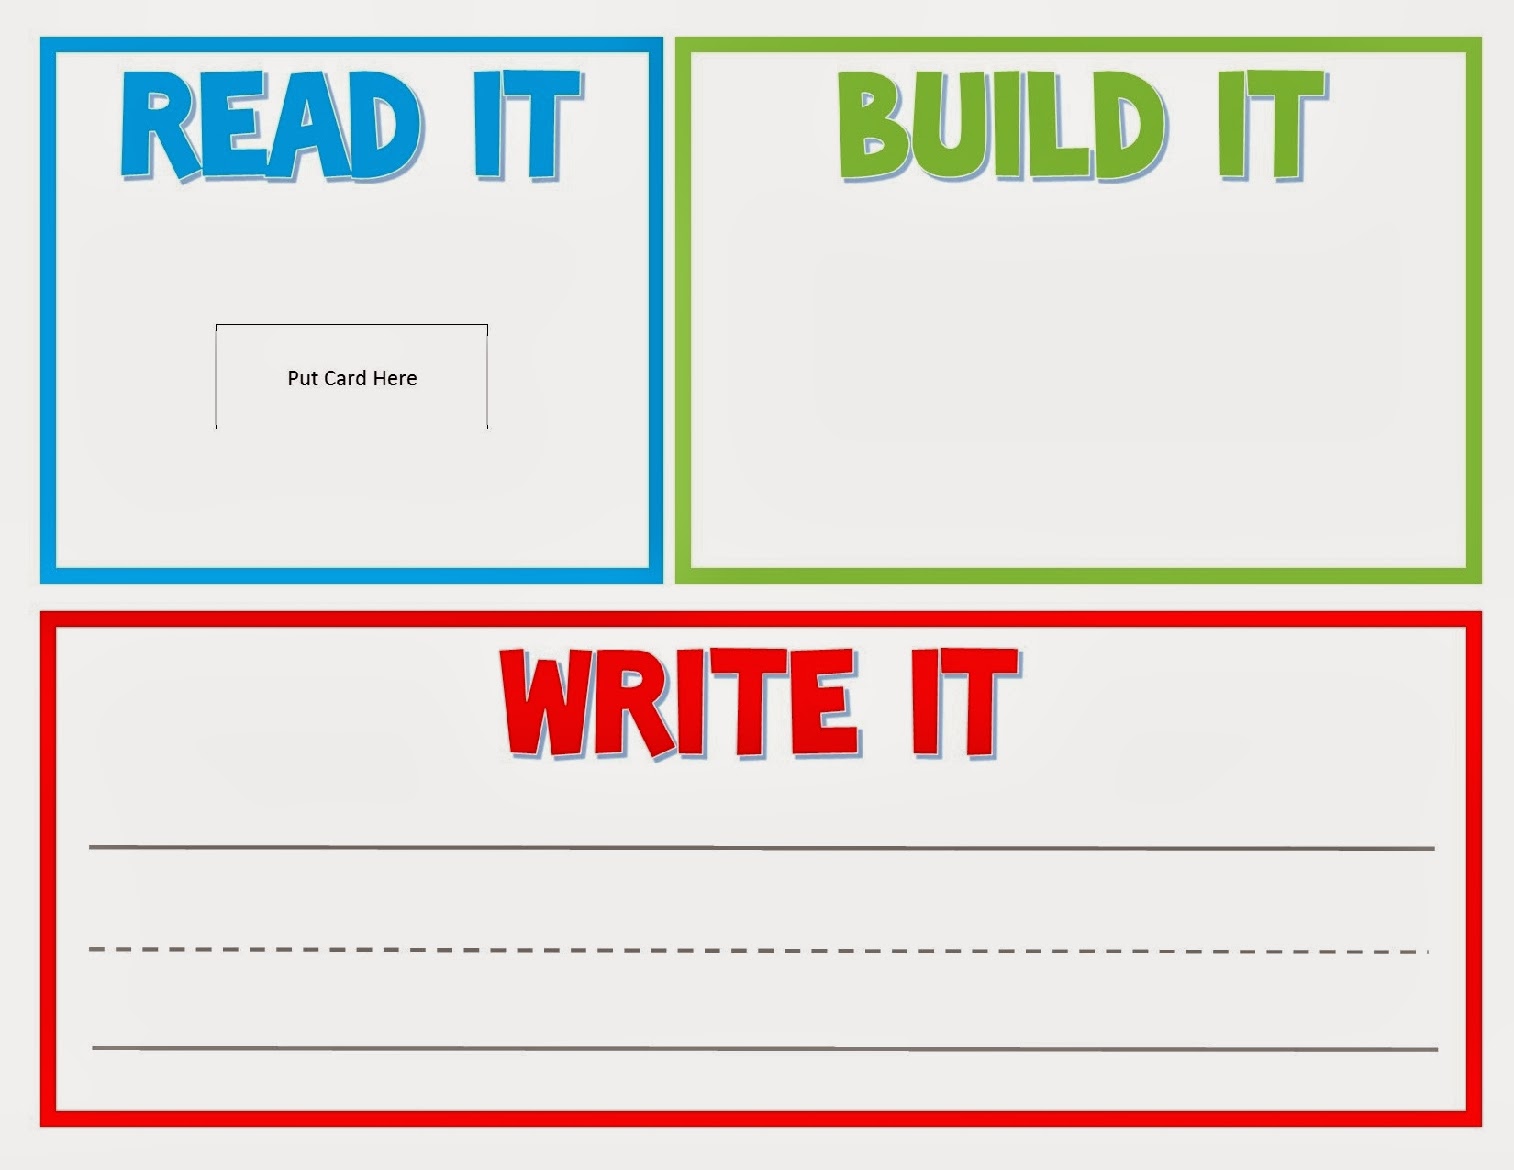 Read it. Write it. Build it. What's it шаблон.